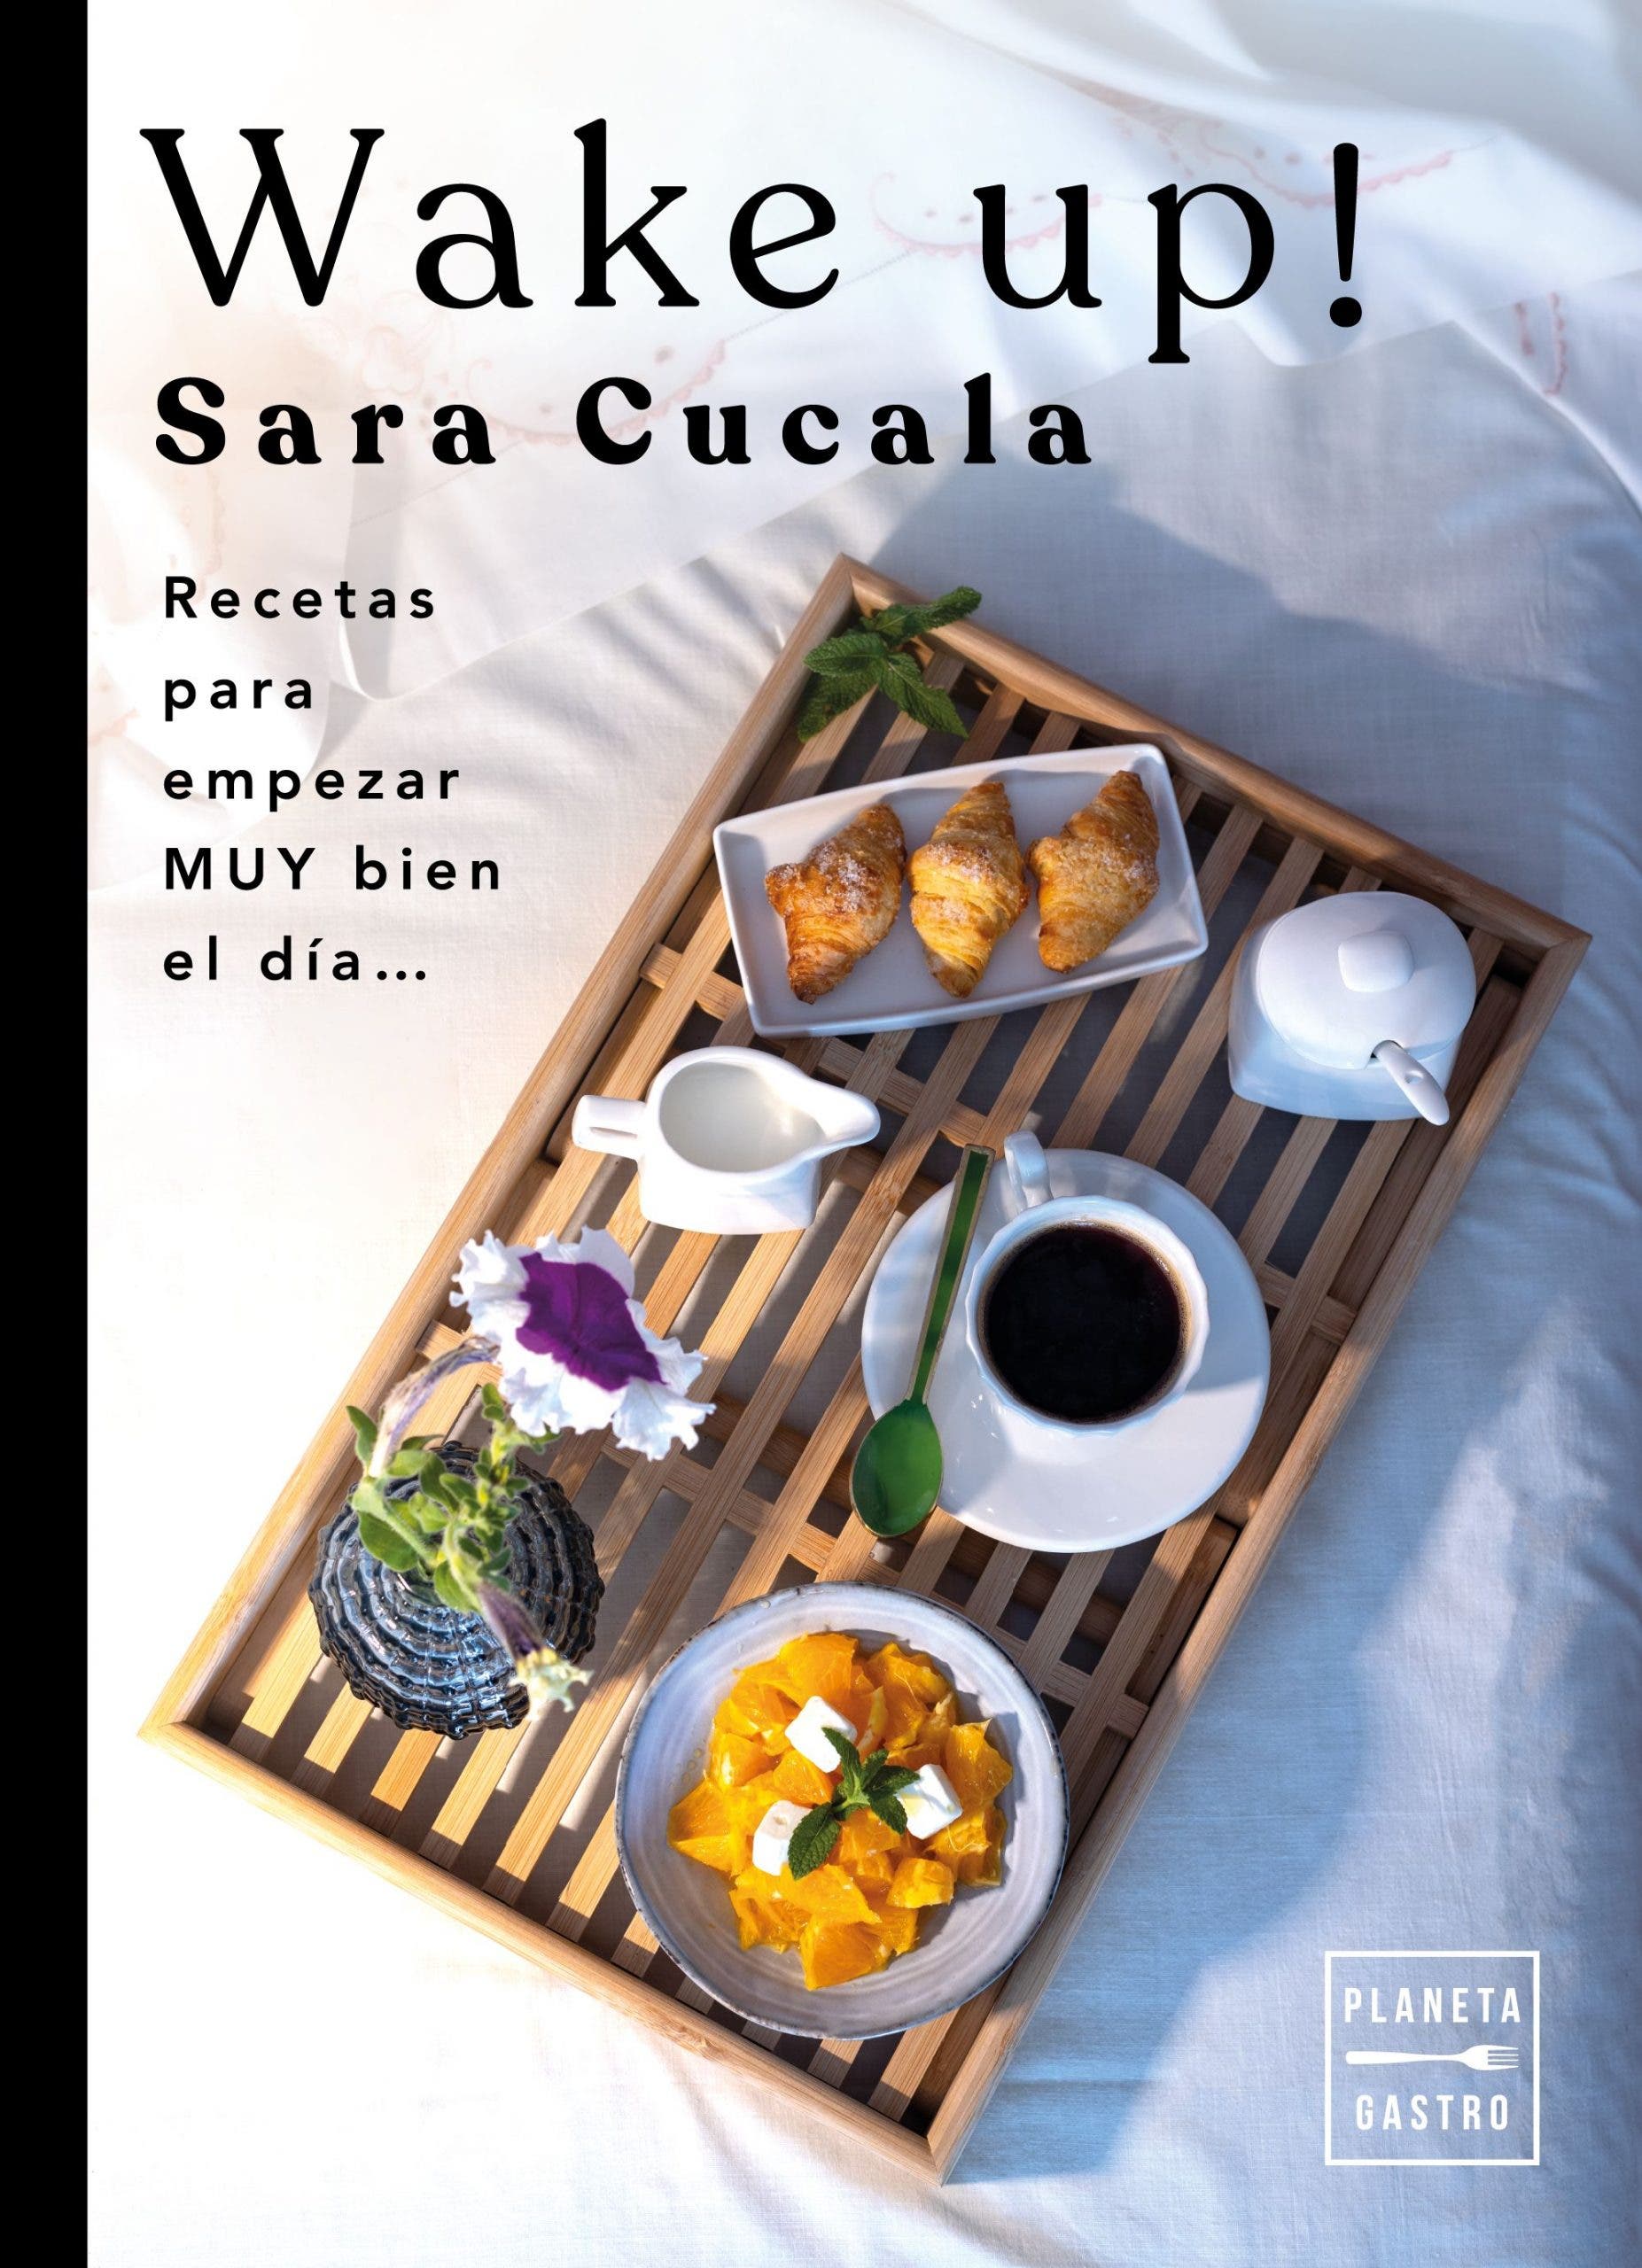 Wake up!

Sara Cucala

  
  
  
 
  
  

Recetas
para
empezar
MUY bien
el dia...